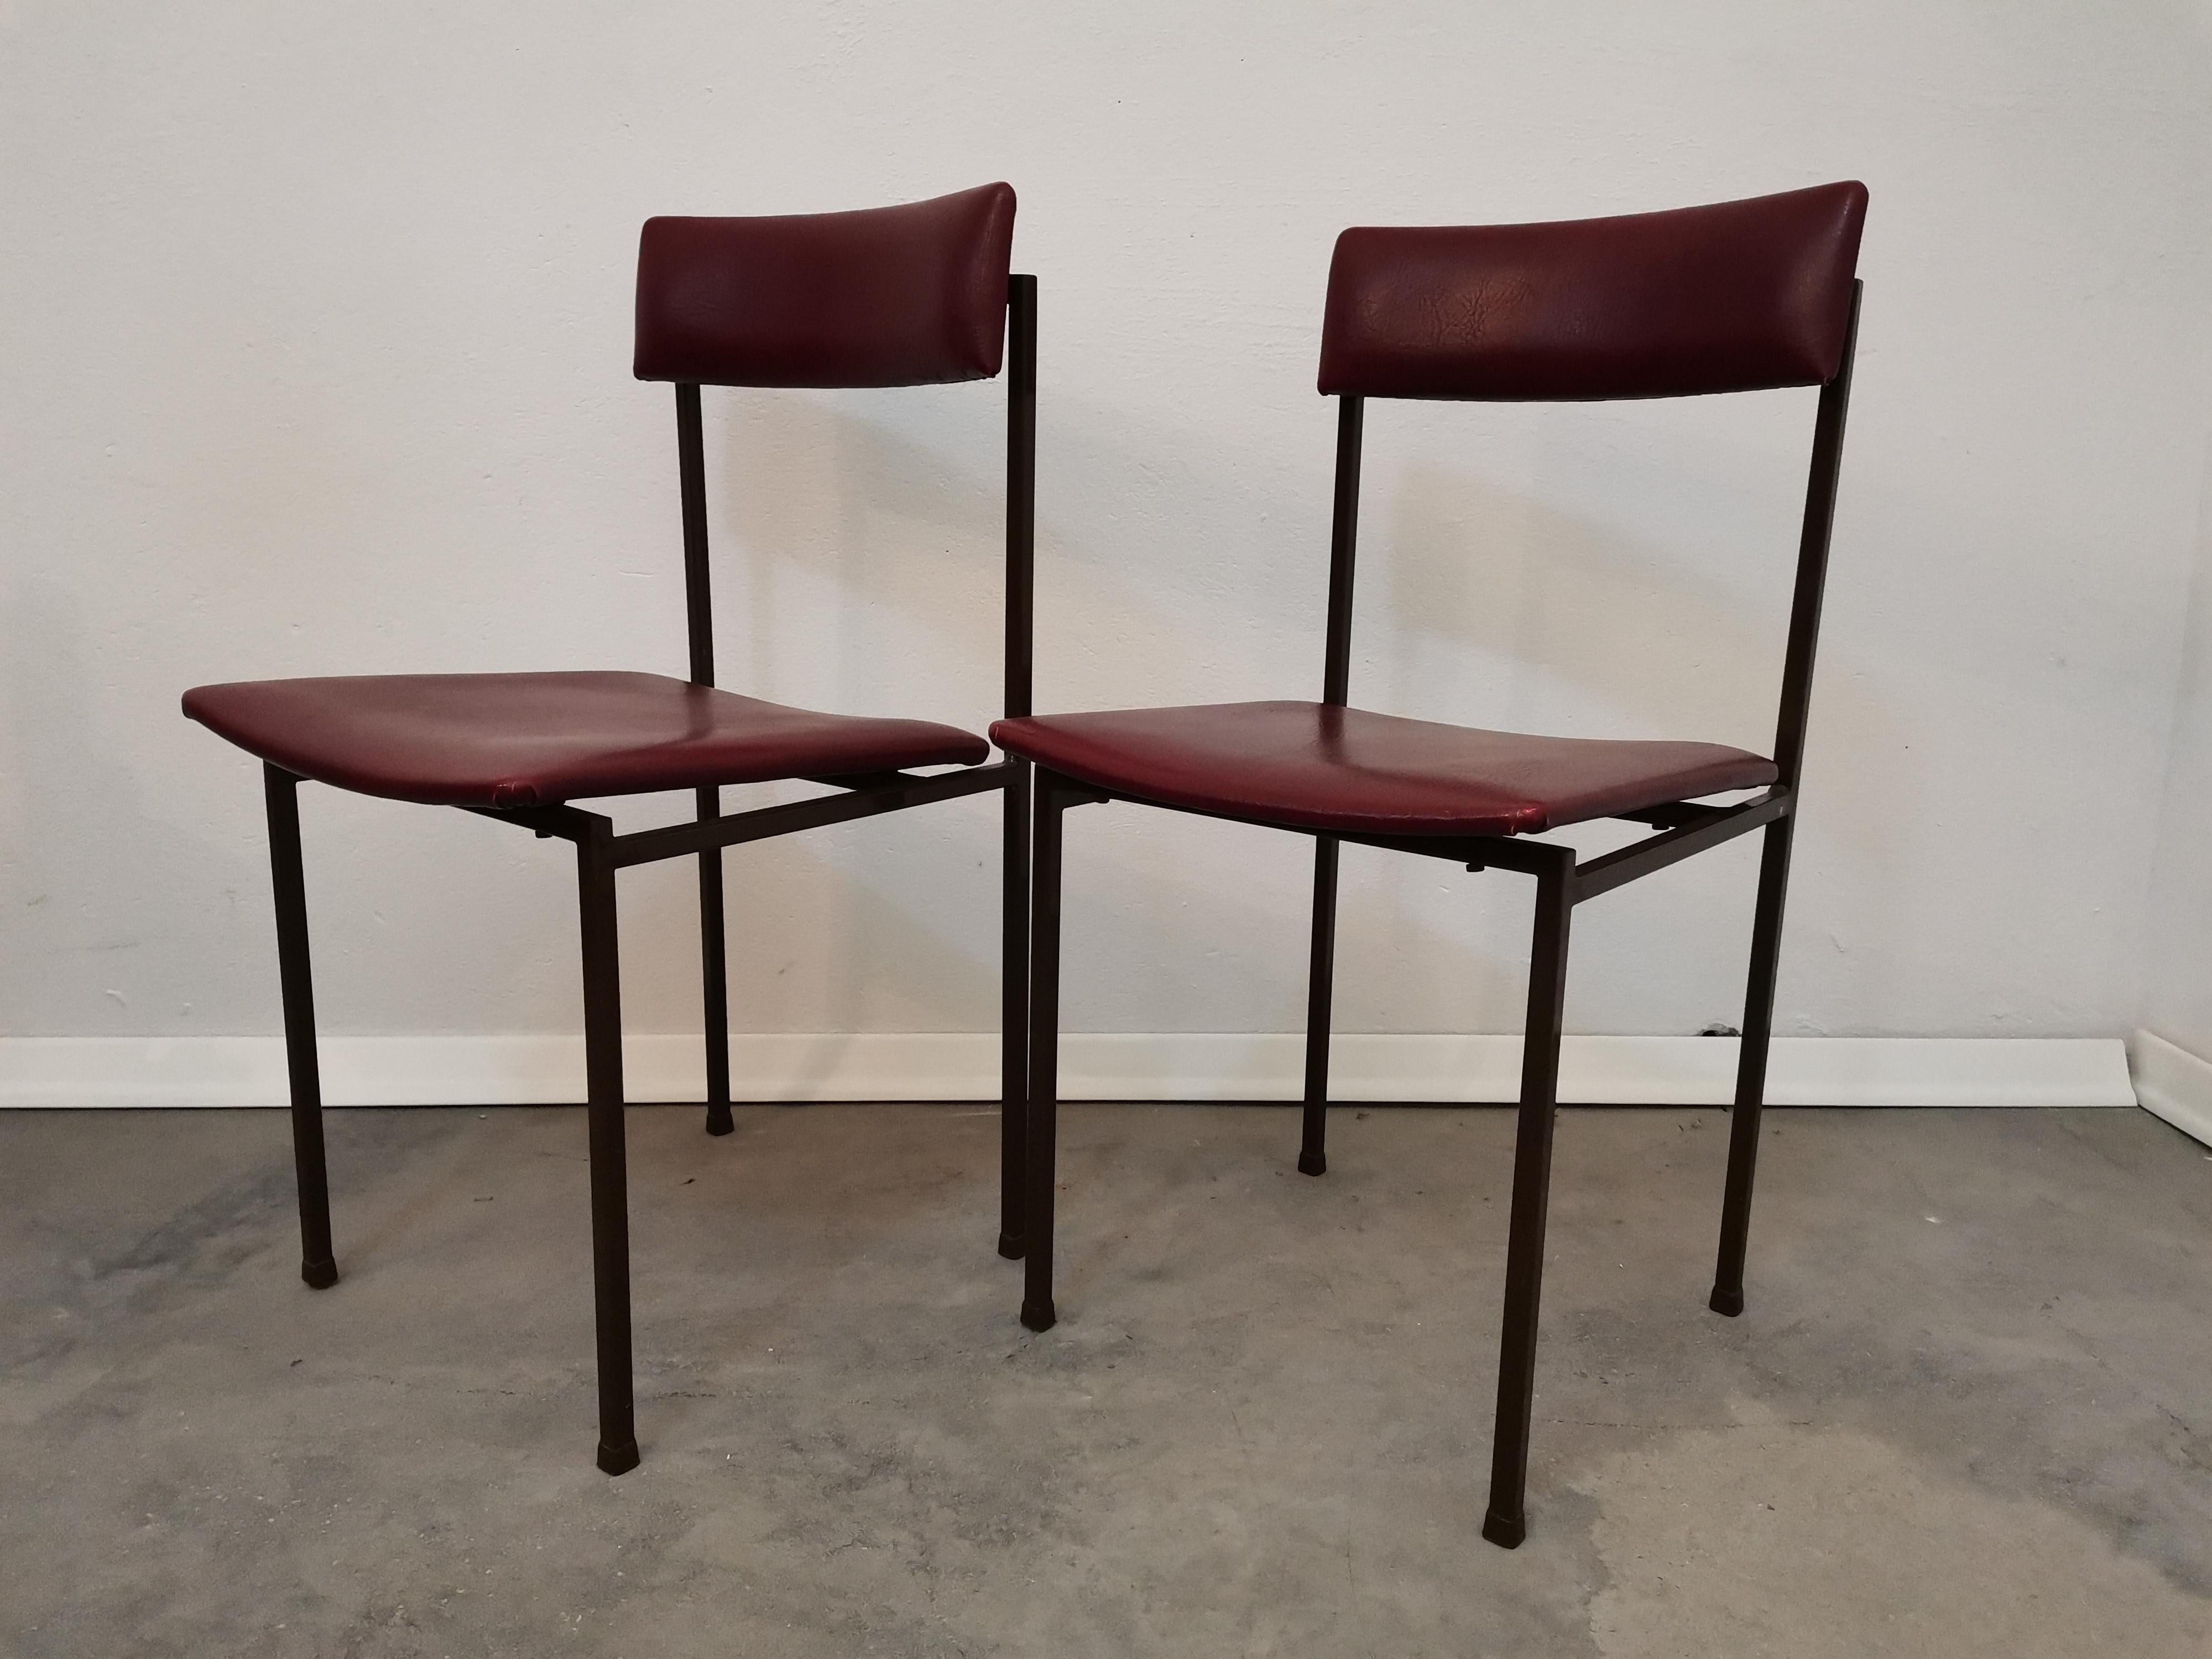 Matériaux : Contreplaqué, faux cuir, métal

Cette magnifique chaise est un parfait exemple du design minimaliste du milieu du siècle dernier. Le cadre en métal solide et le contreplaqué recouvert de faux cuir rouge foncé apportent une esthétique